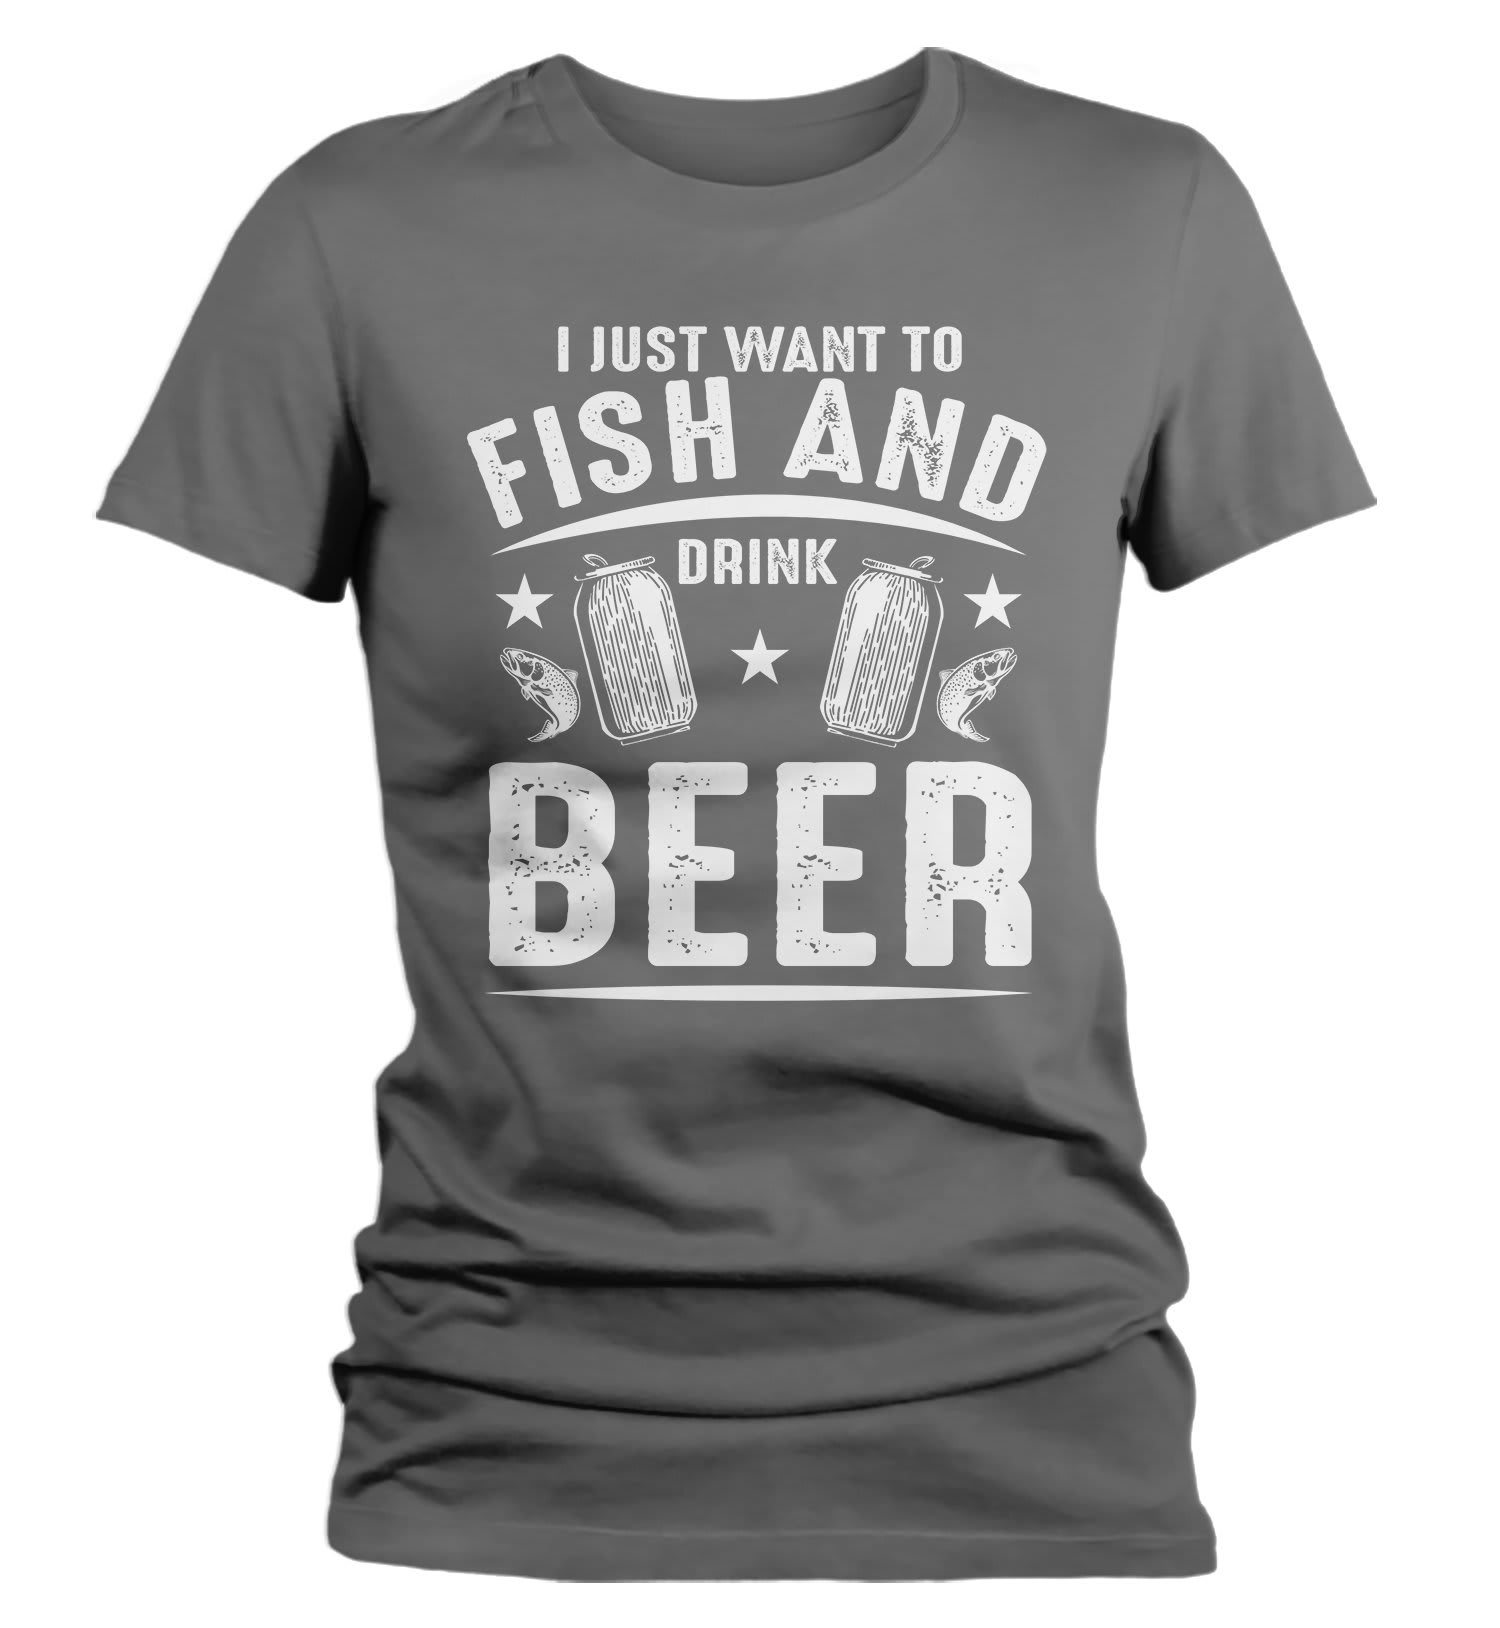 beer t shirt women's